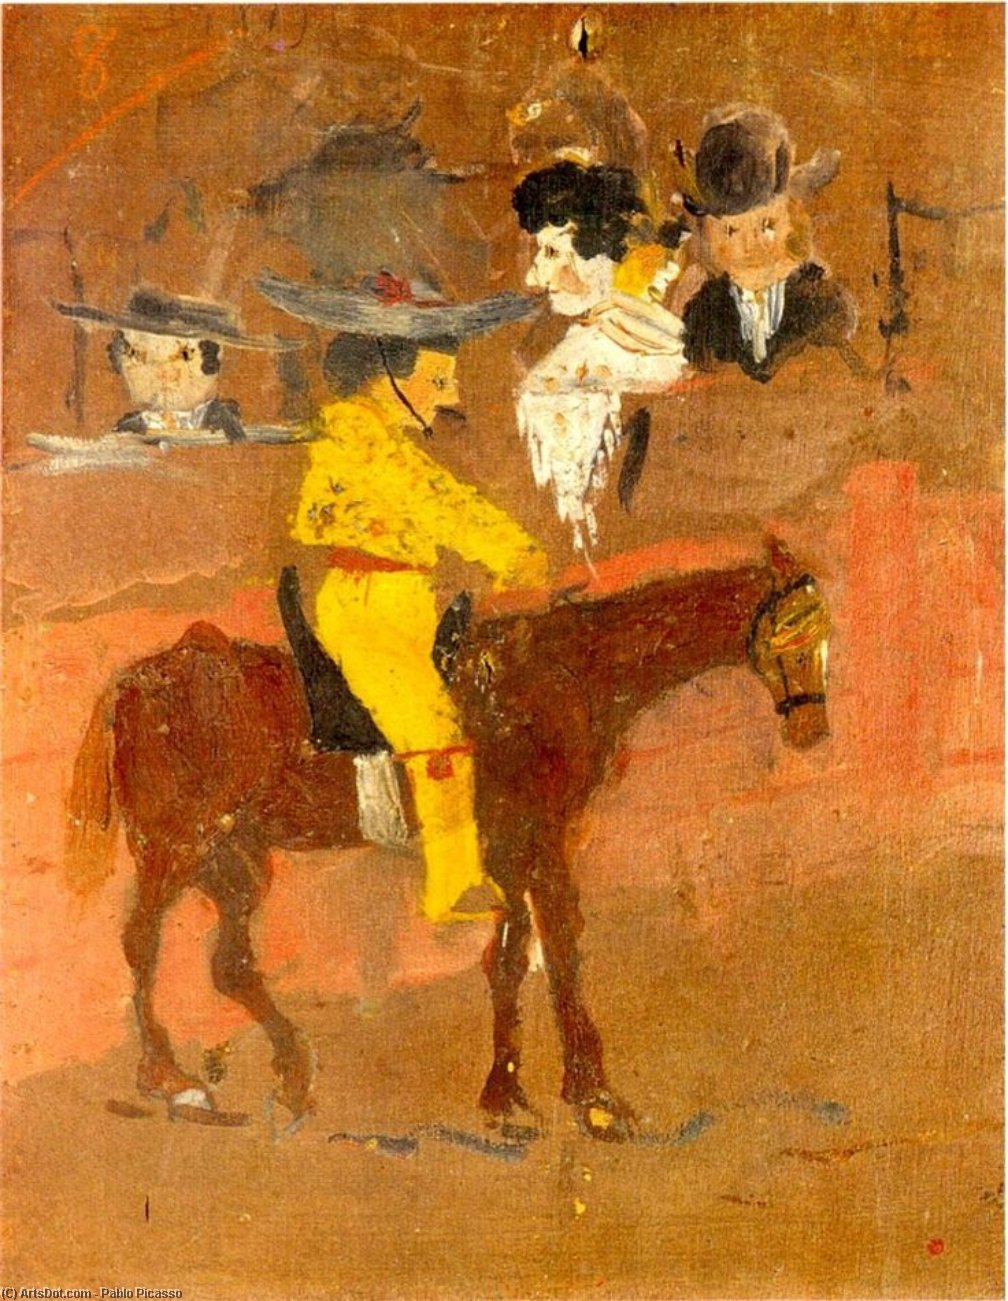 WikiOO.org - Encyclopedia of Fine Arts - Lukisan, Artwork Pablo Picasso - El picador